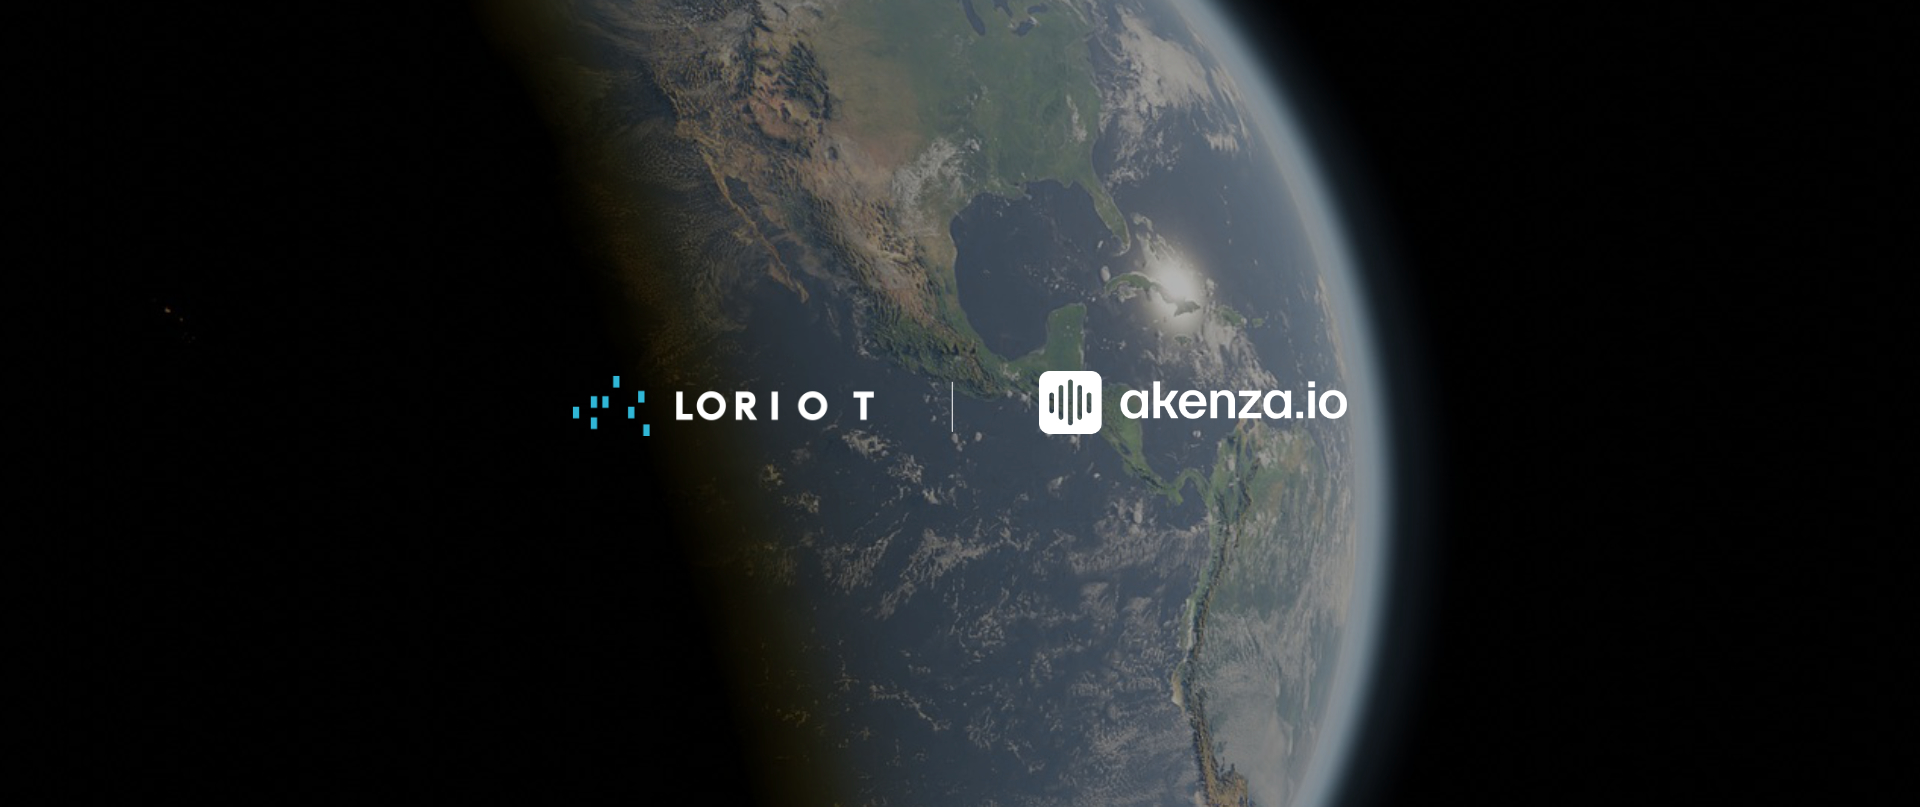 akenza - LORIOT roaming hub